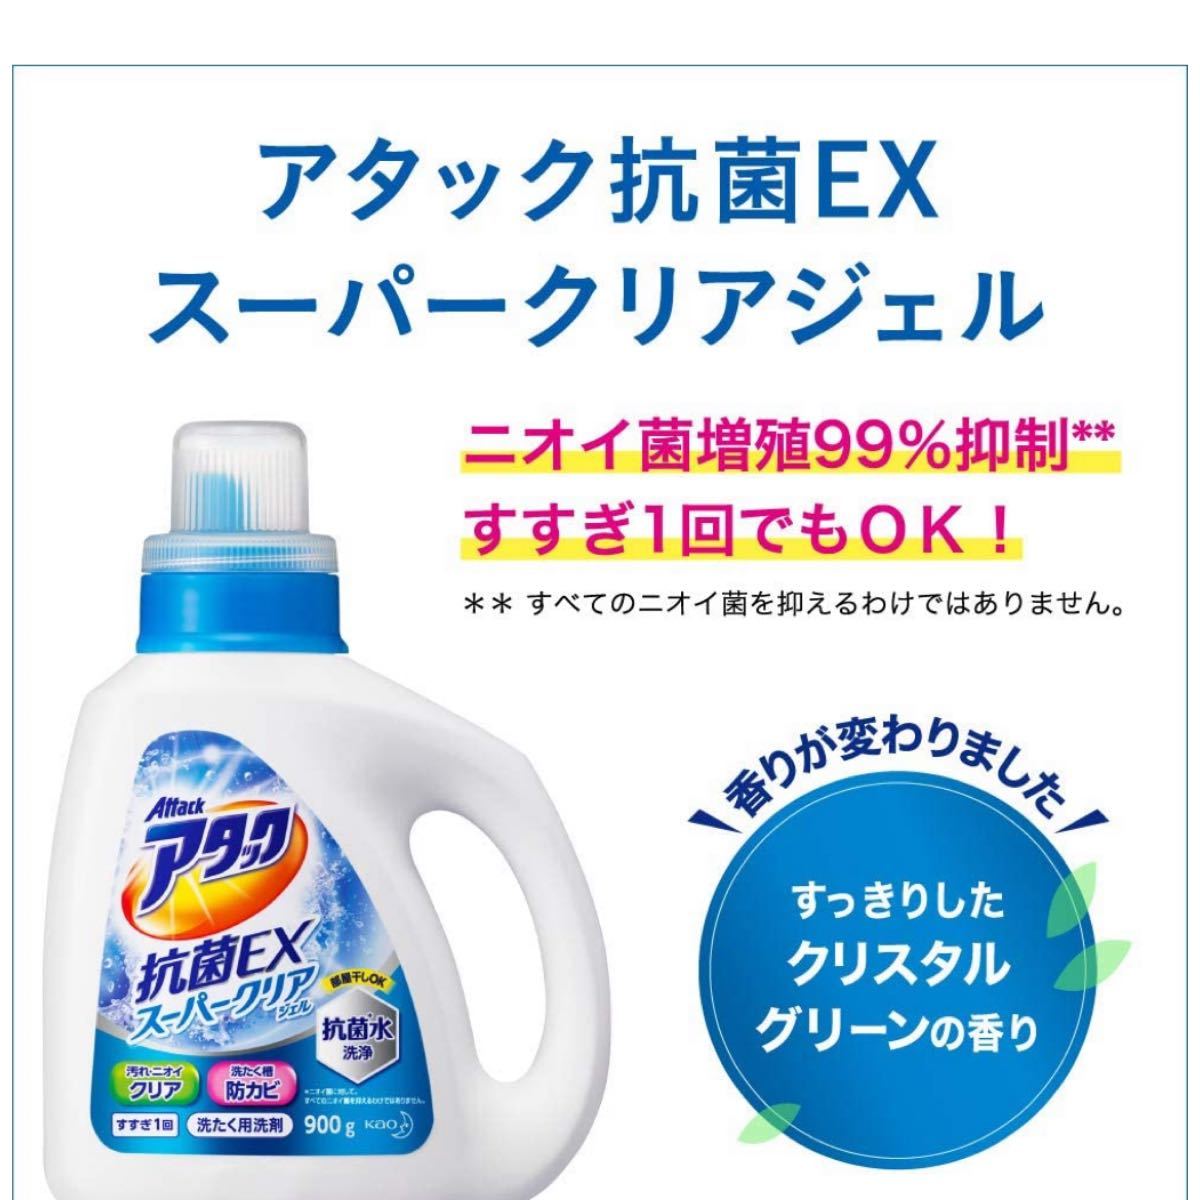 【ケース販売】 アタック 抗菌EX スーパークリアジェル 洗濯洗剤 液体 詰め替え 大容量 1.6kg×6個